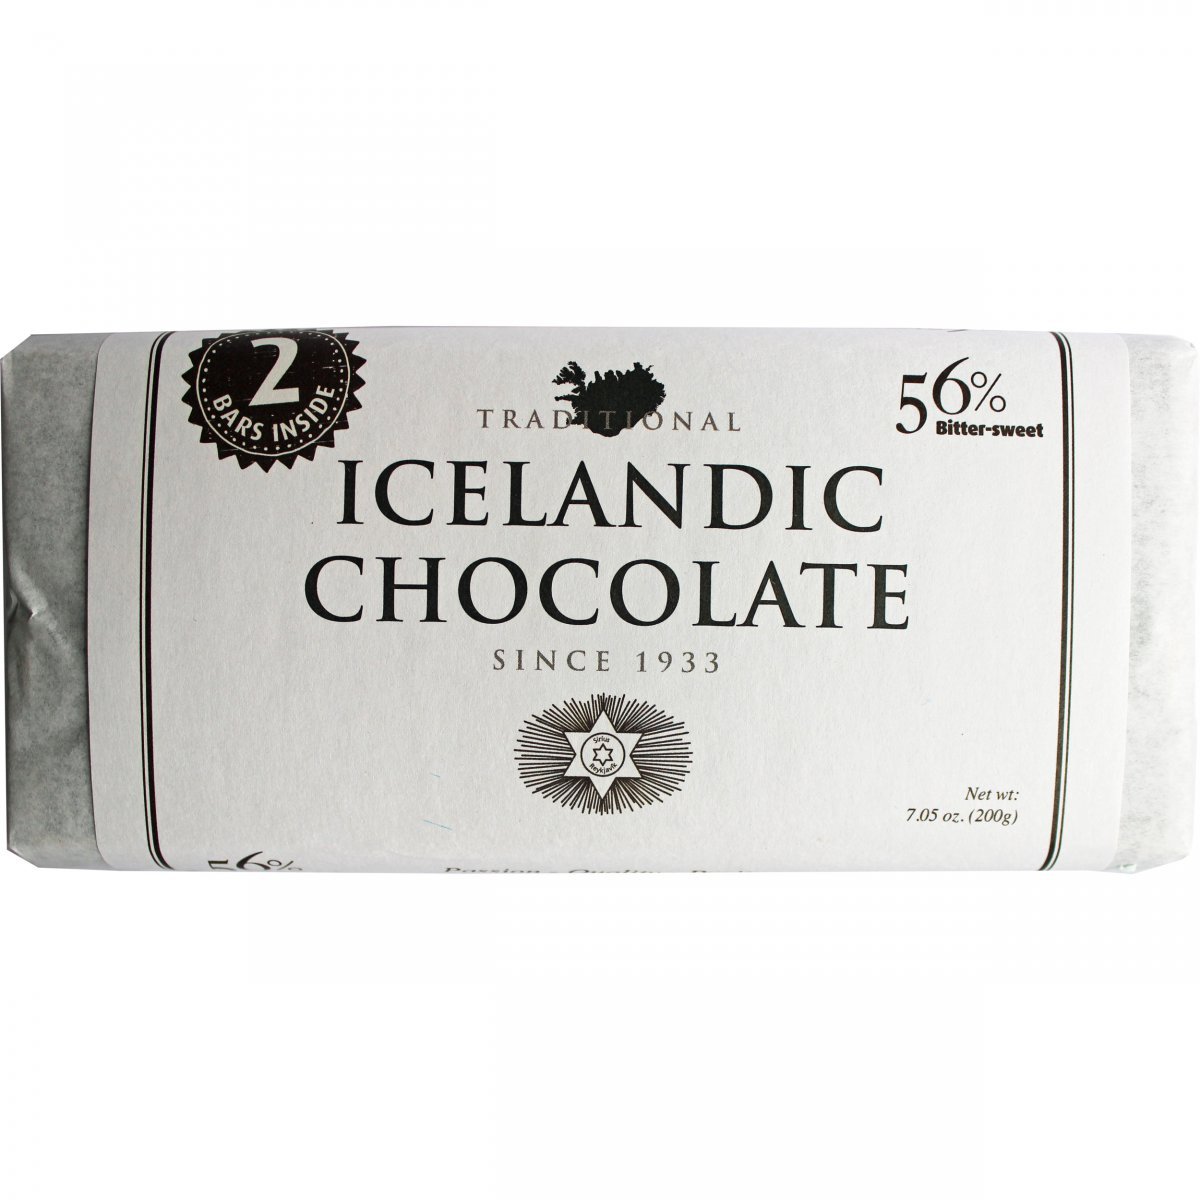 Noi Sirius- 56% Traditional Icelandic Chocolate - Chocolate Blocks